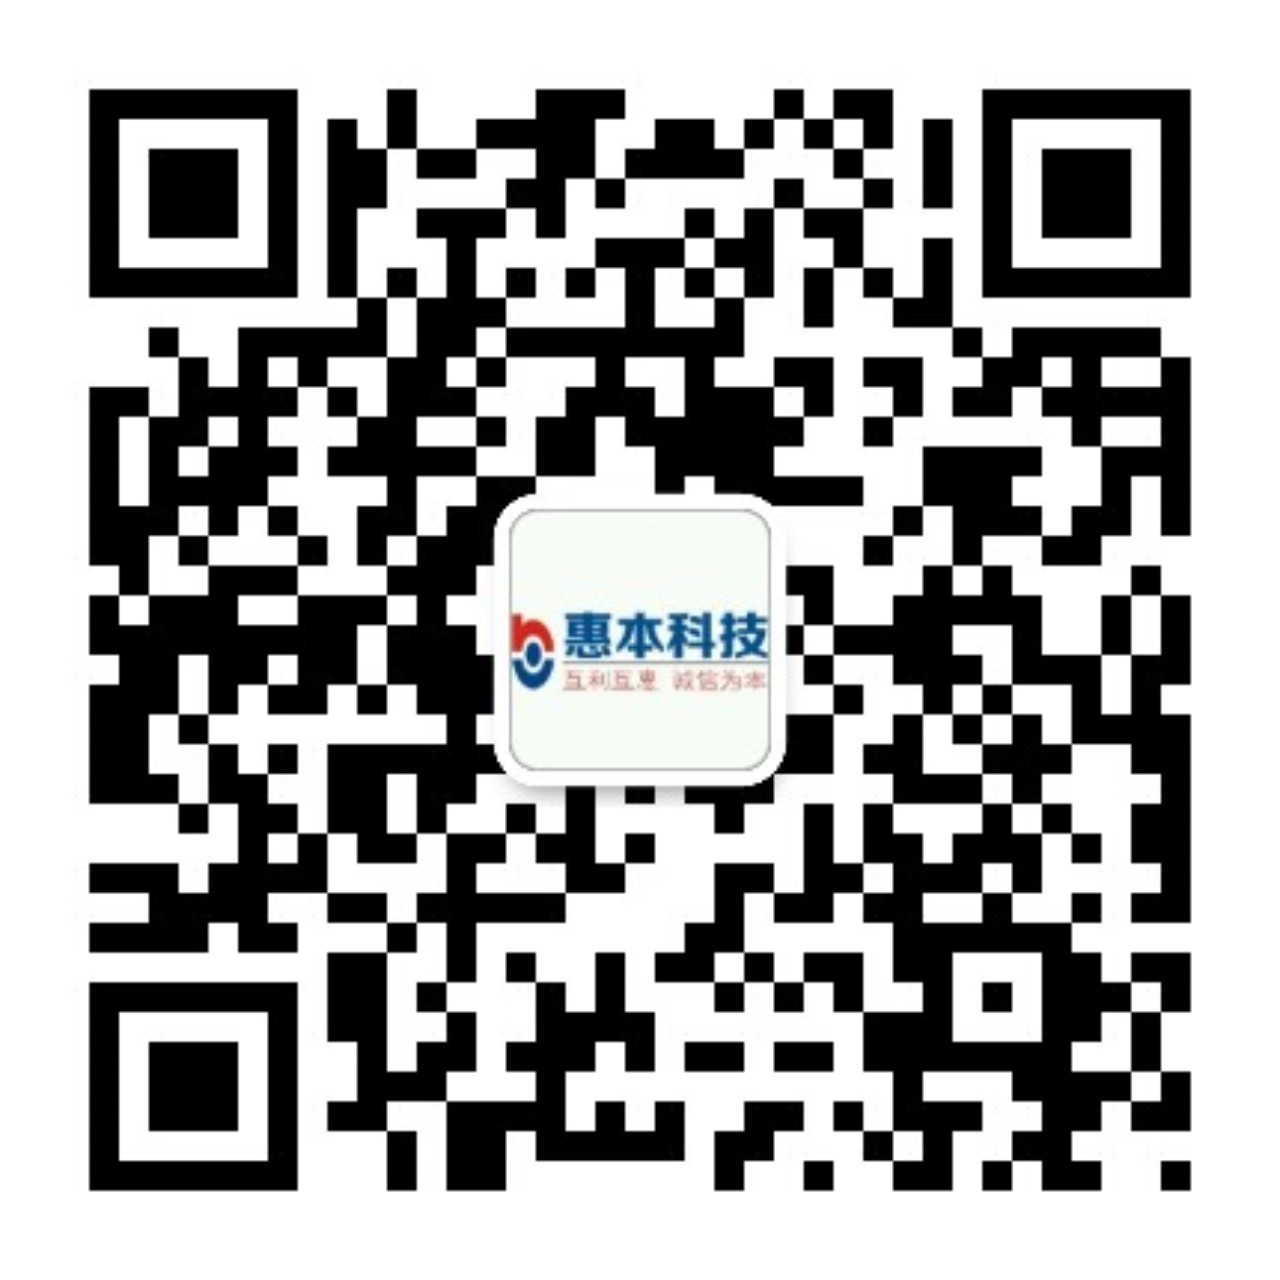 江西惠本科技有限公司 -Powered by zychr.com